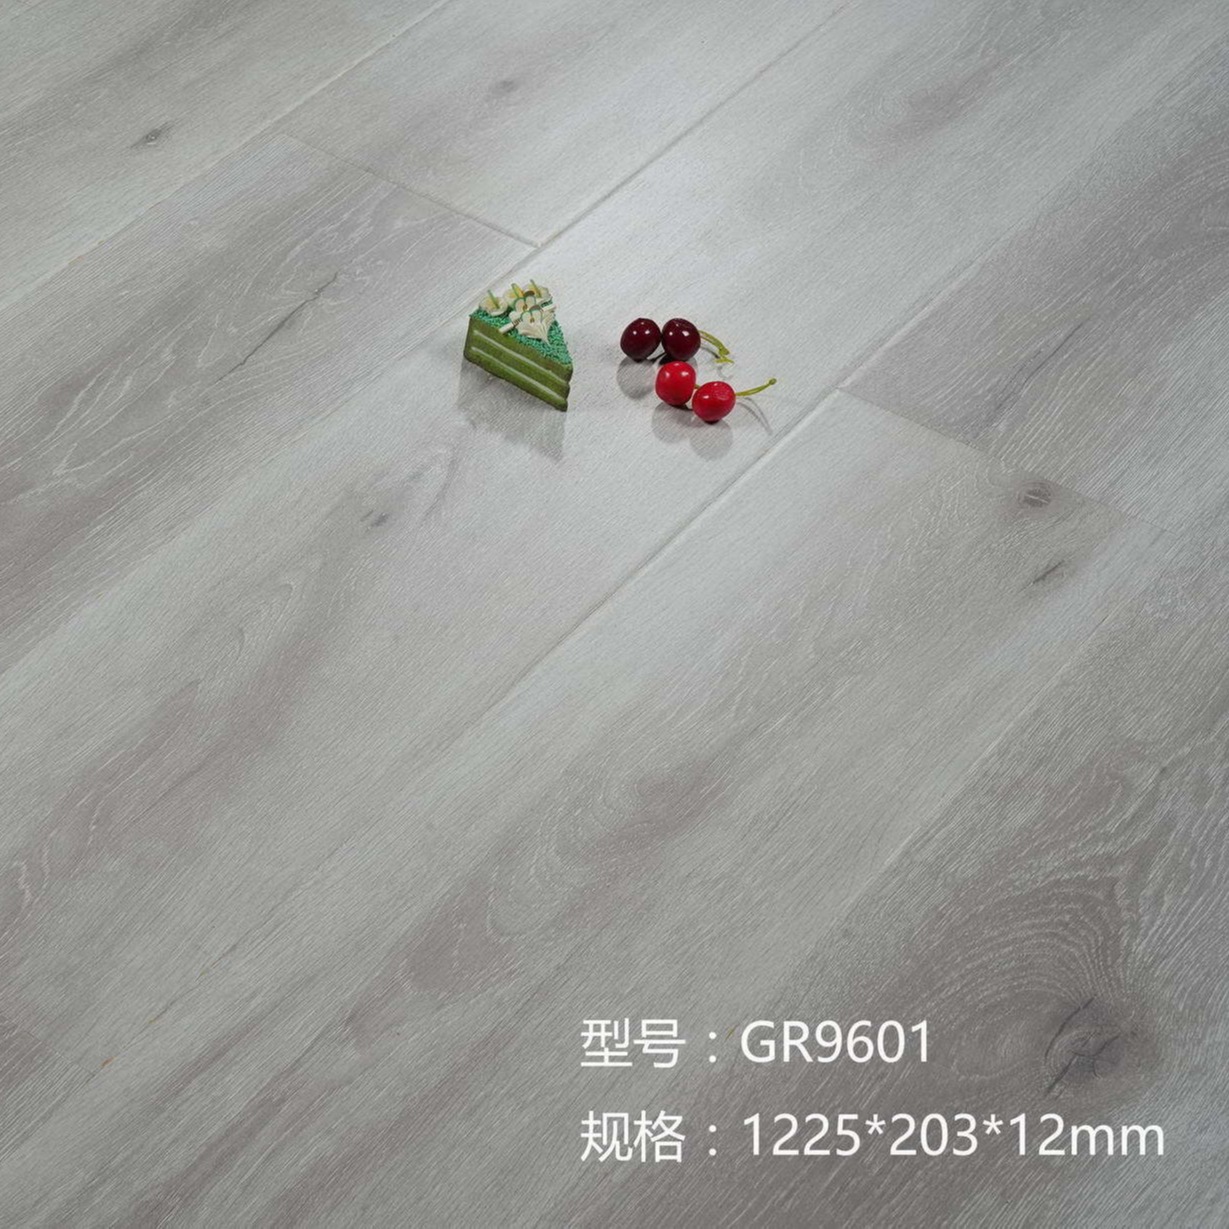 高清耐磨花色纸 海拉尔幻影拉丝系列 E1级大豆环保用胶 强化复合地板 绿色选材 冠然地板